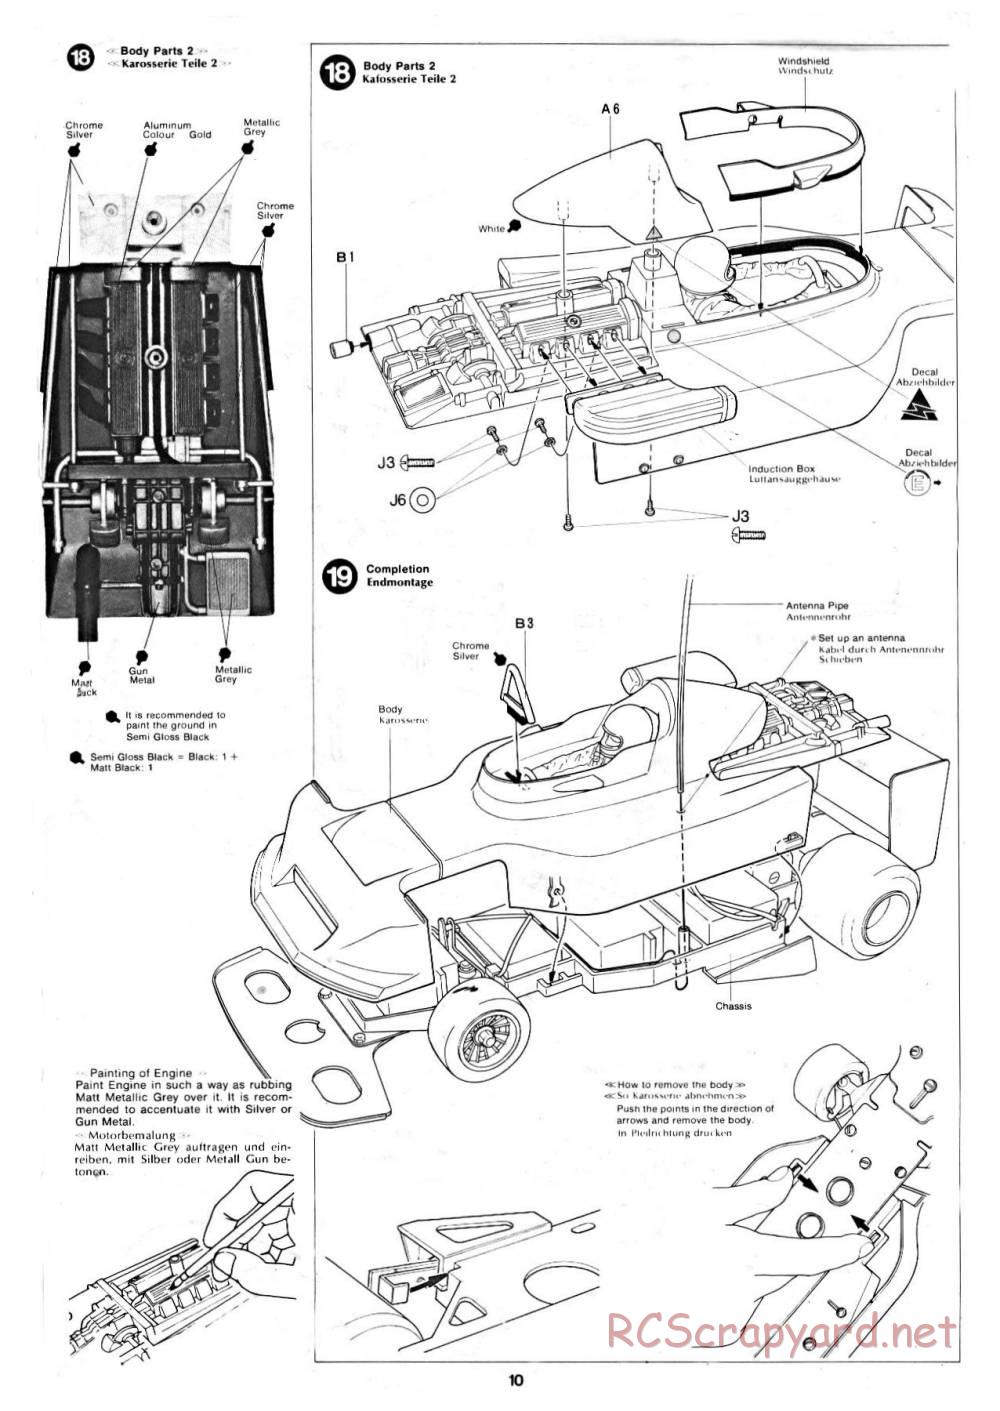 Tamiya - March 782 BMW (F2) - 58013 - Manual - Page 10